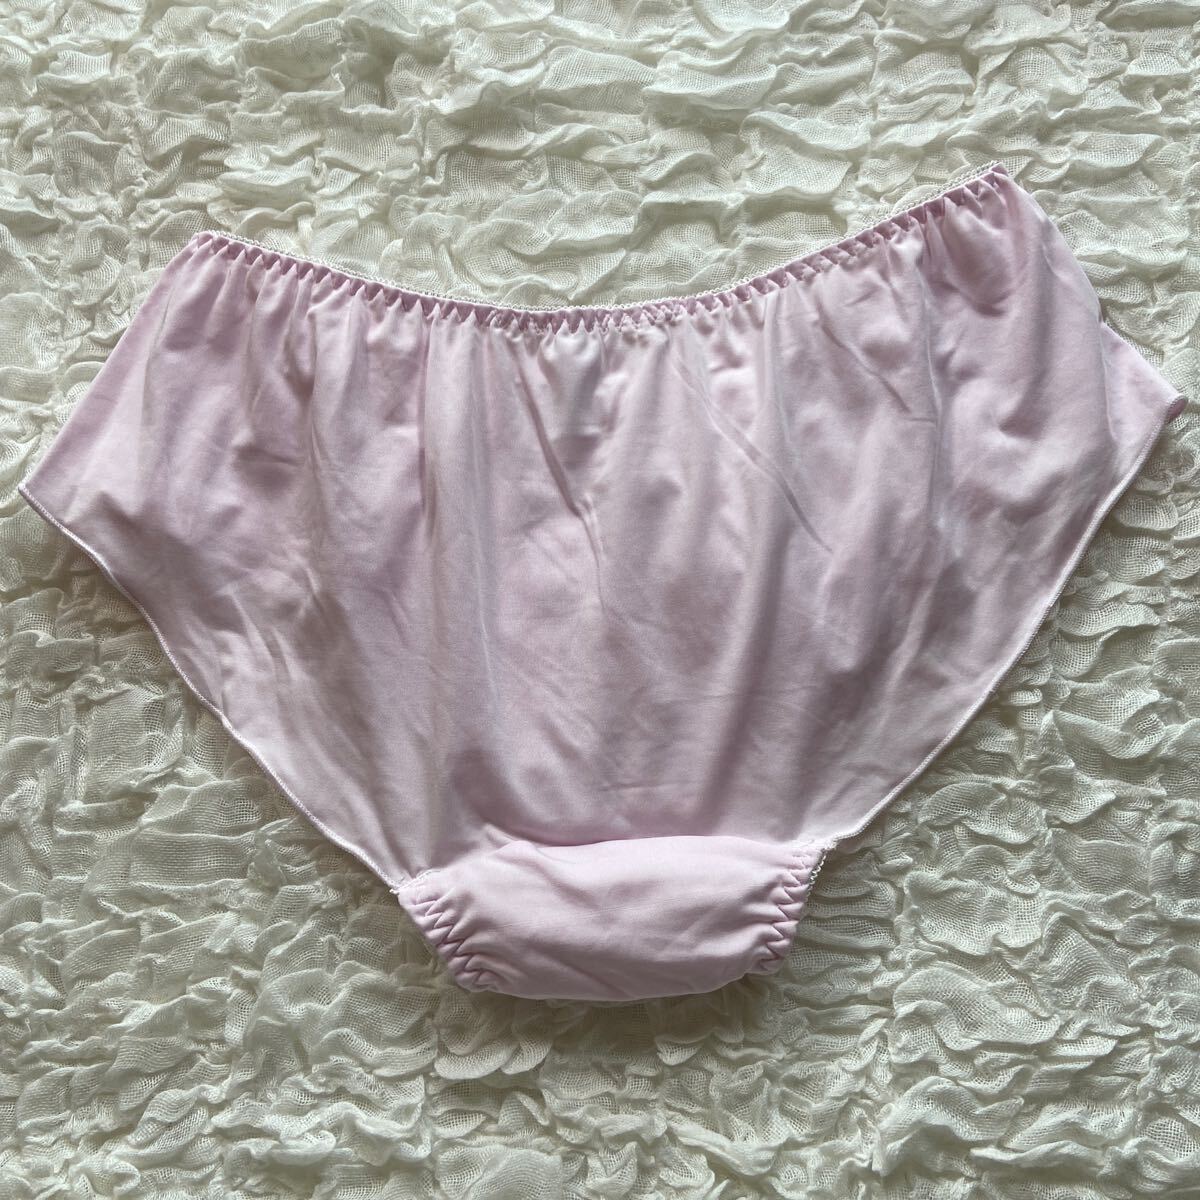 L レディース ショーツ パンツ パンティ ランジェリー インナーウェア 女性用下着 ピンク リボンの画像2